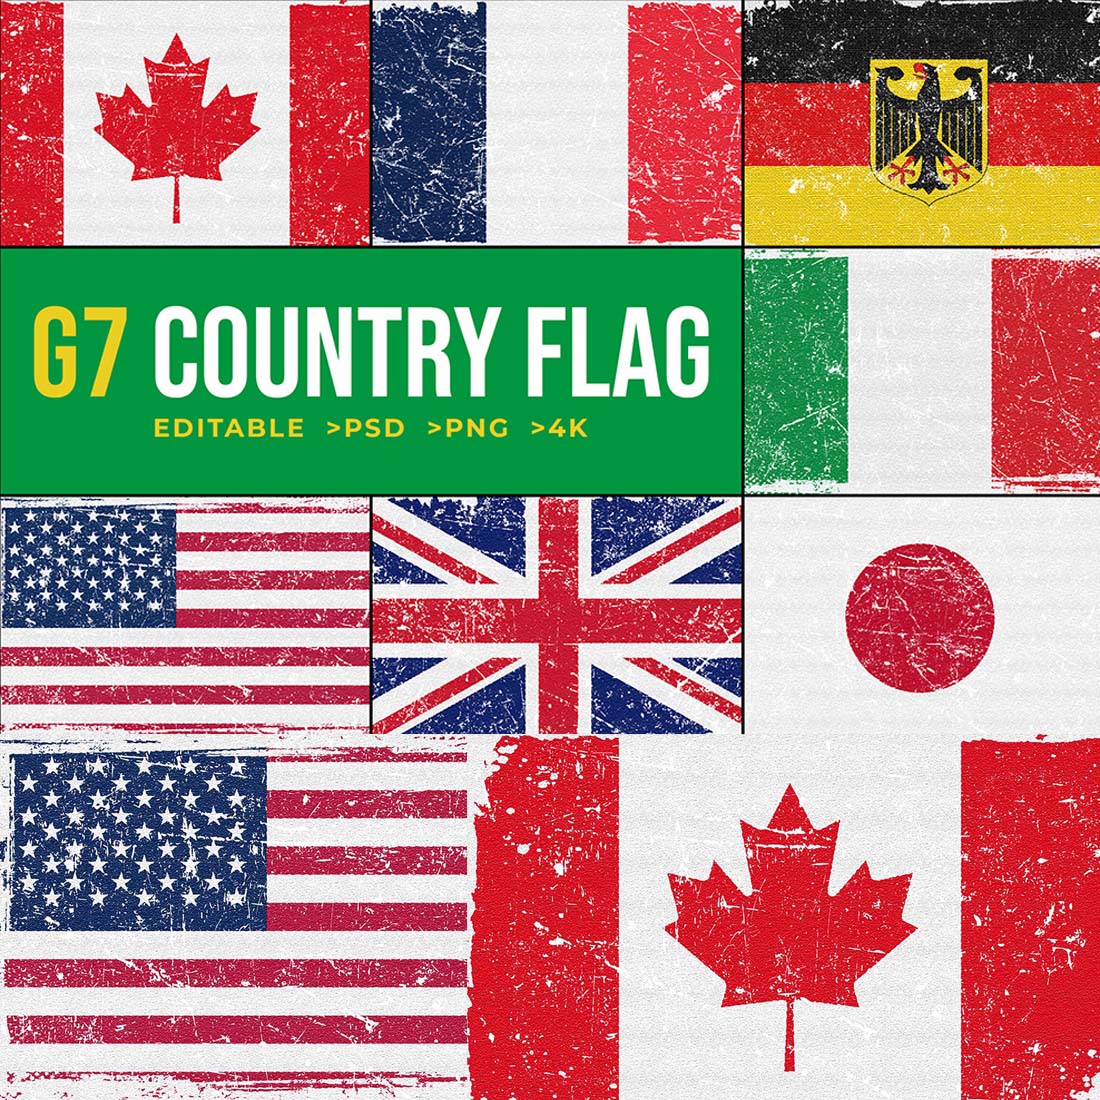 G7 An Informal World's Flag Design cover image.